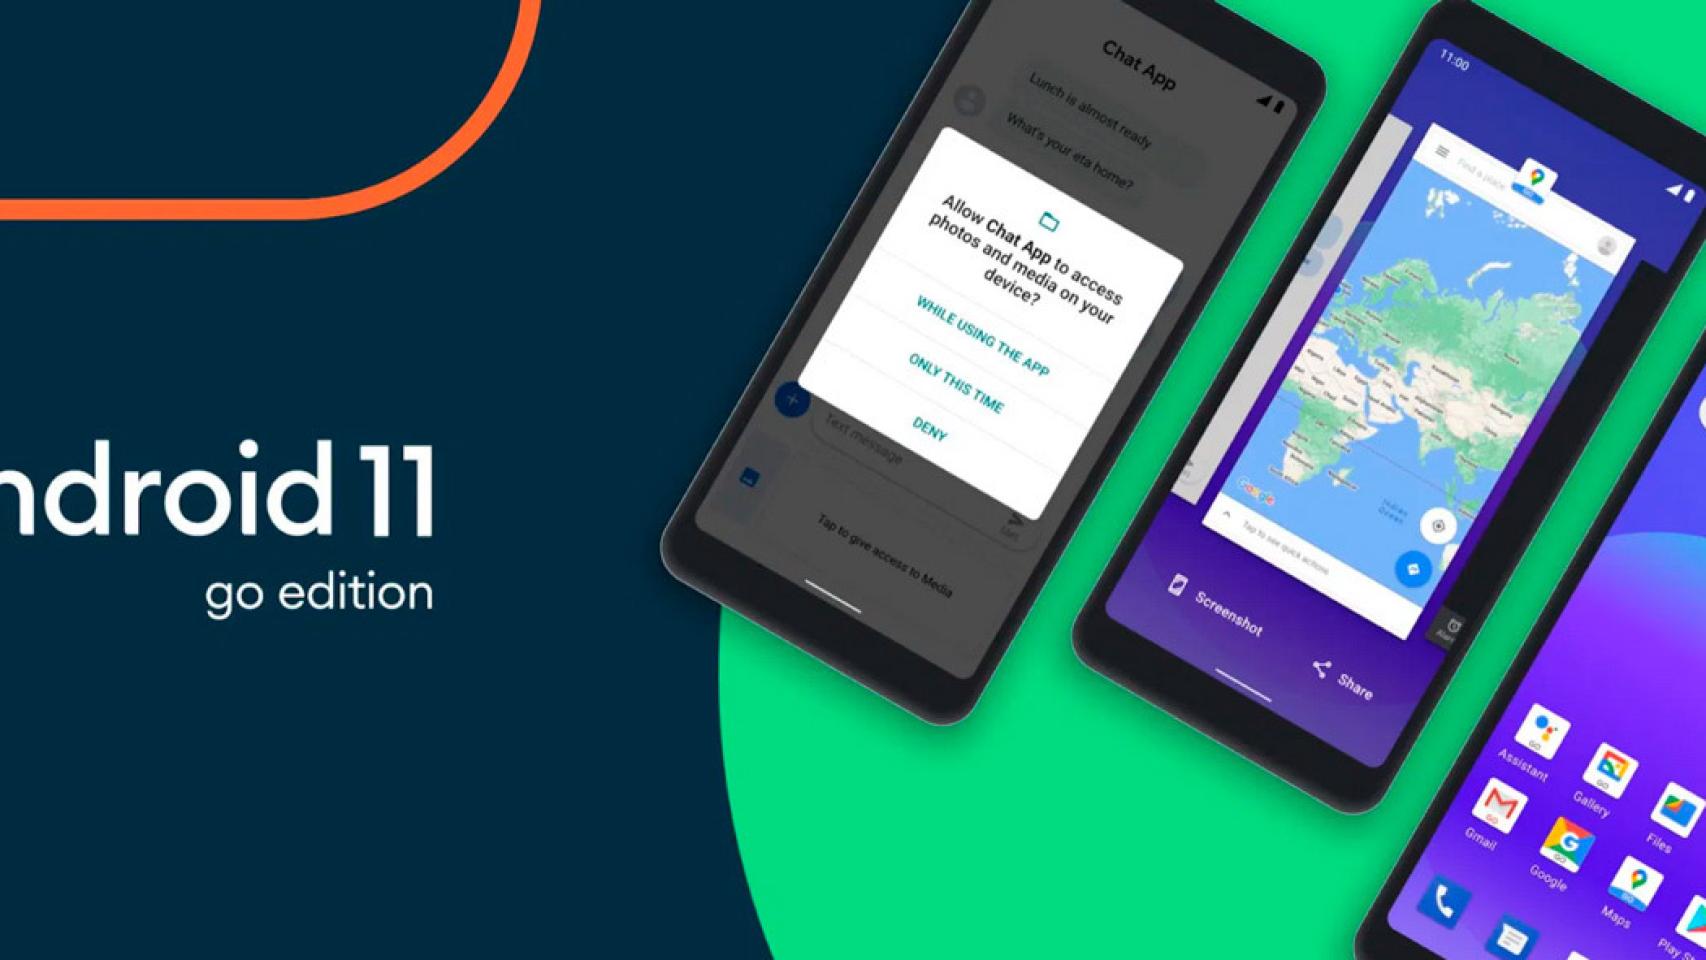 Android 11 para móviles baratos es oficial: Android 11 Go Edition